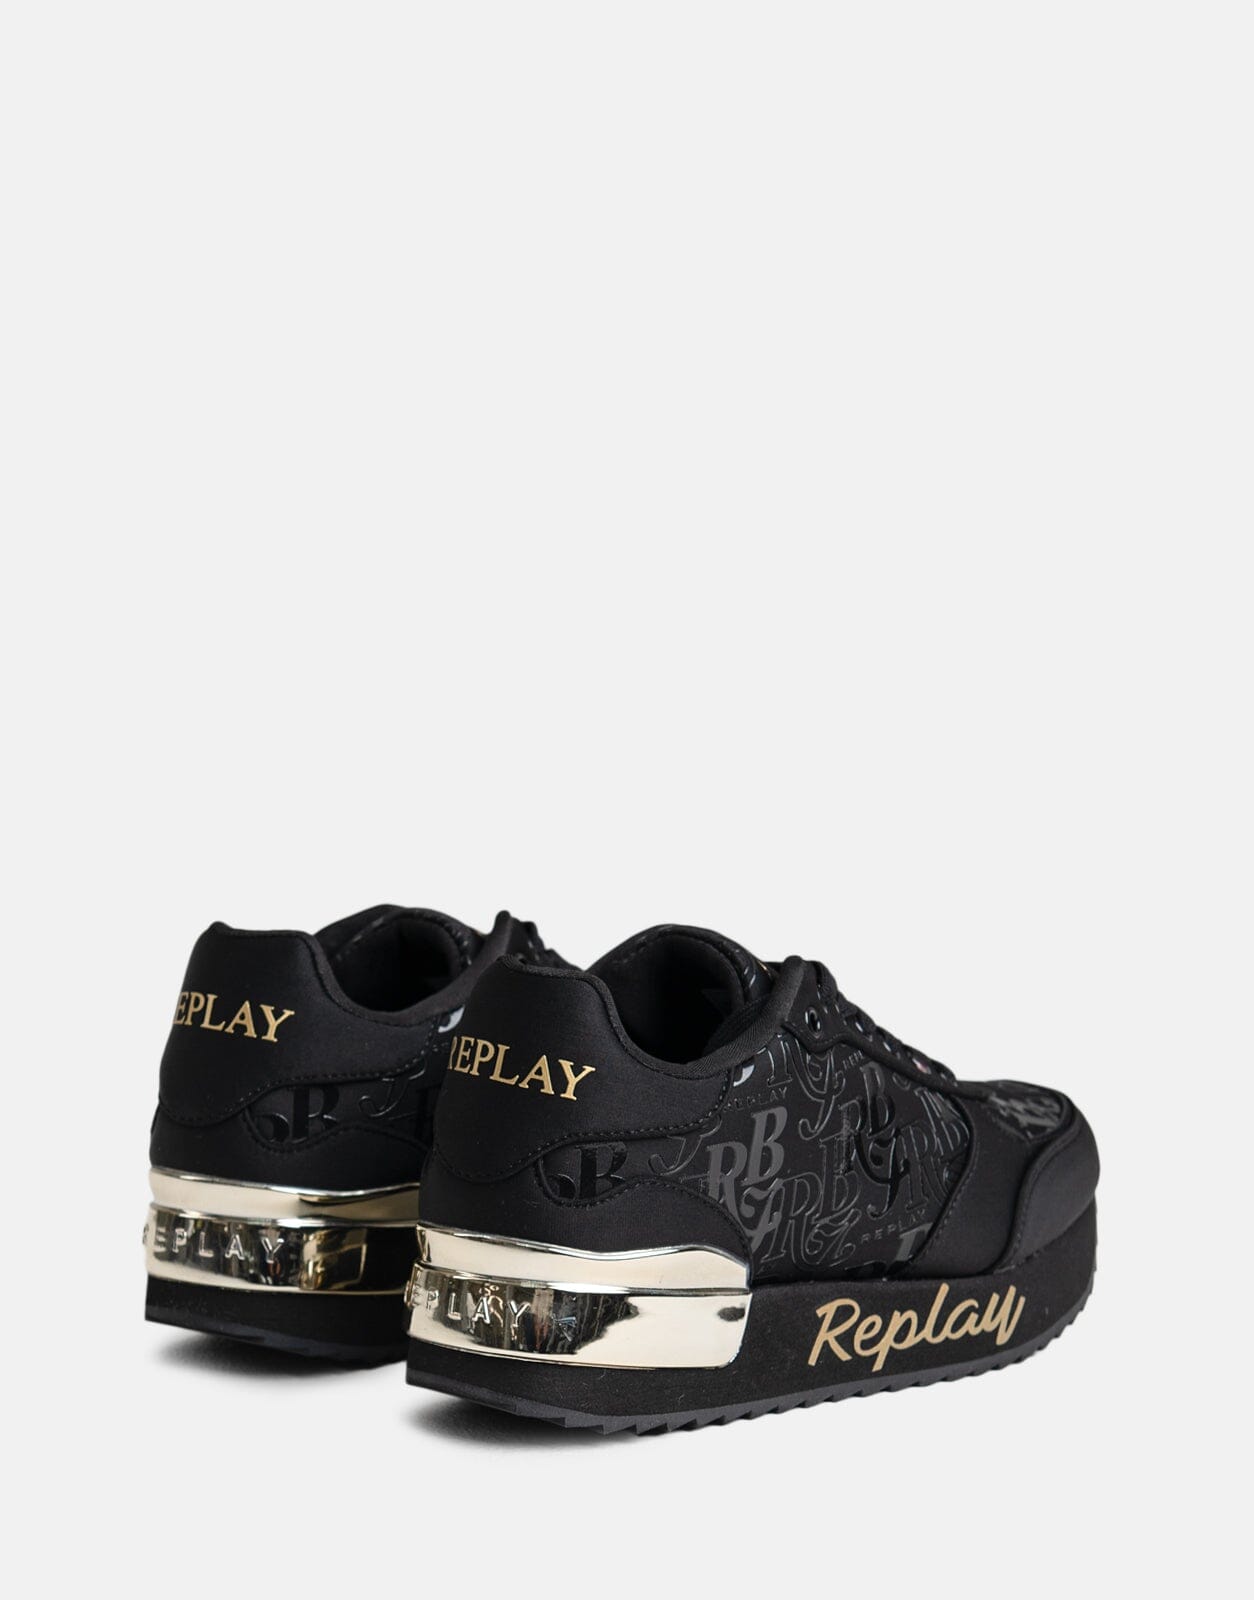 Replay Penny RBJ Black Sneakers - Subwear